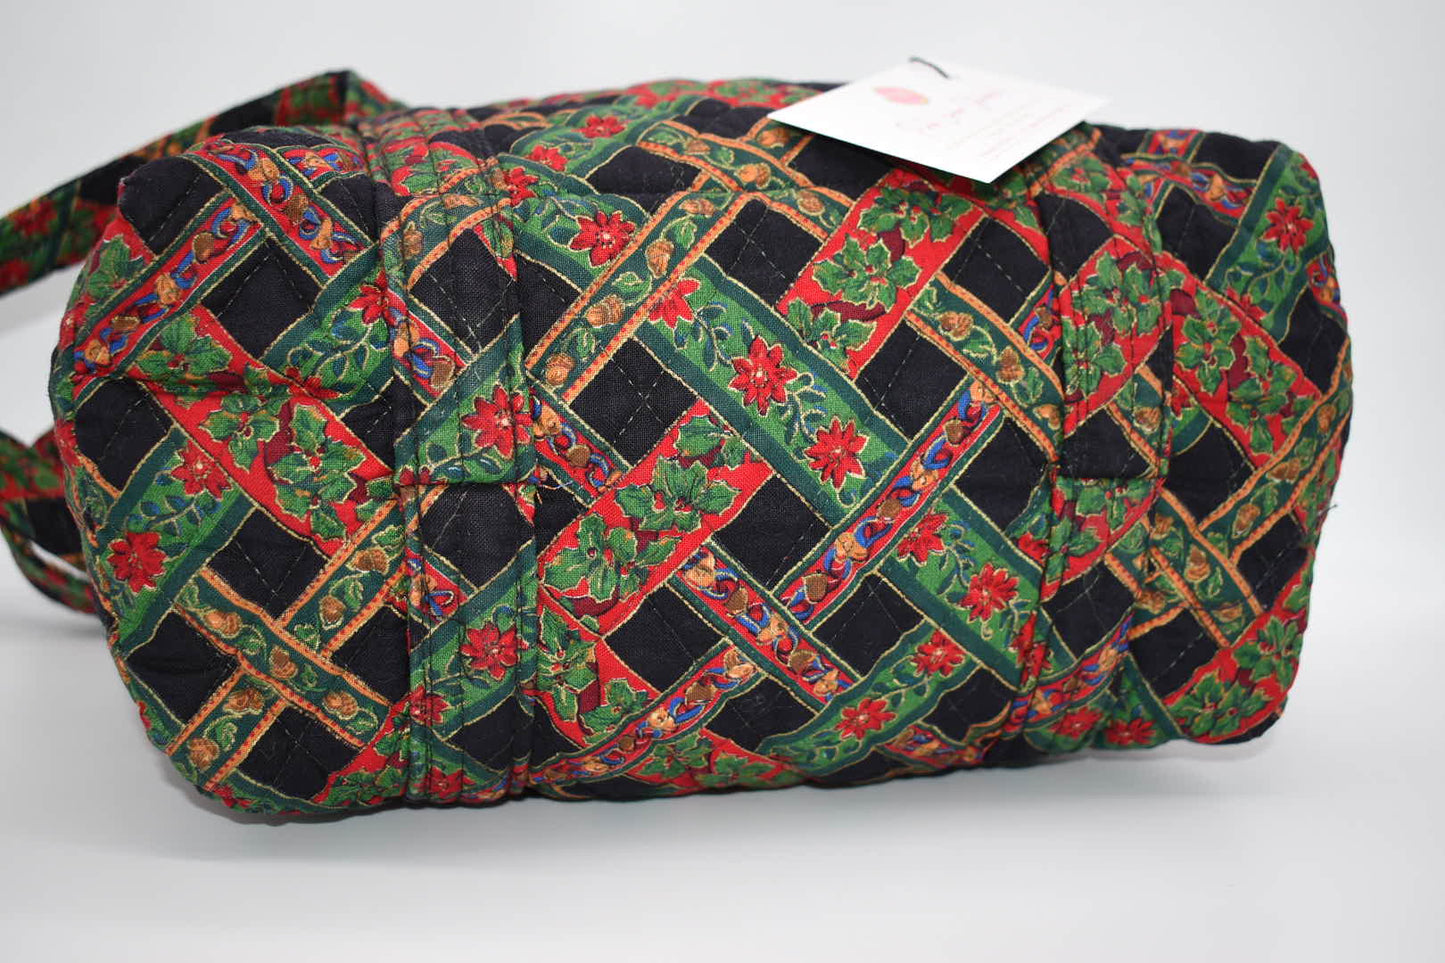 Vintage Vera Bradley Shoulder Bag in "Noel Coordinate" Pattern